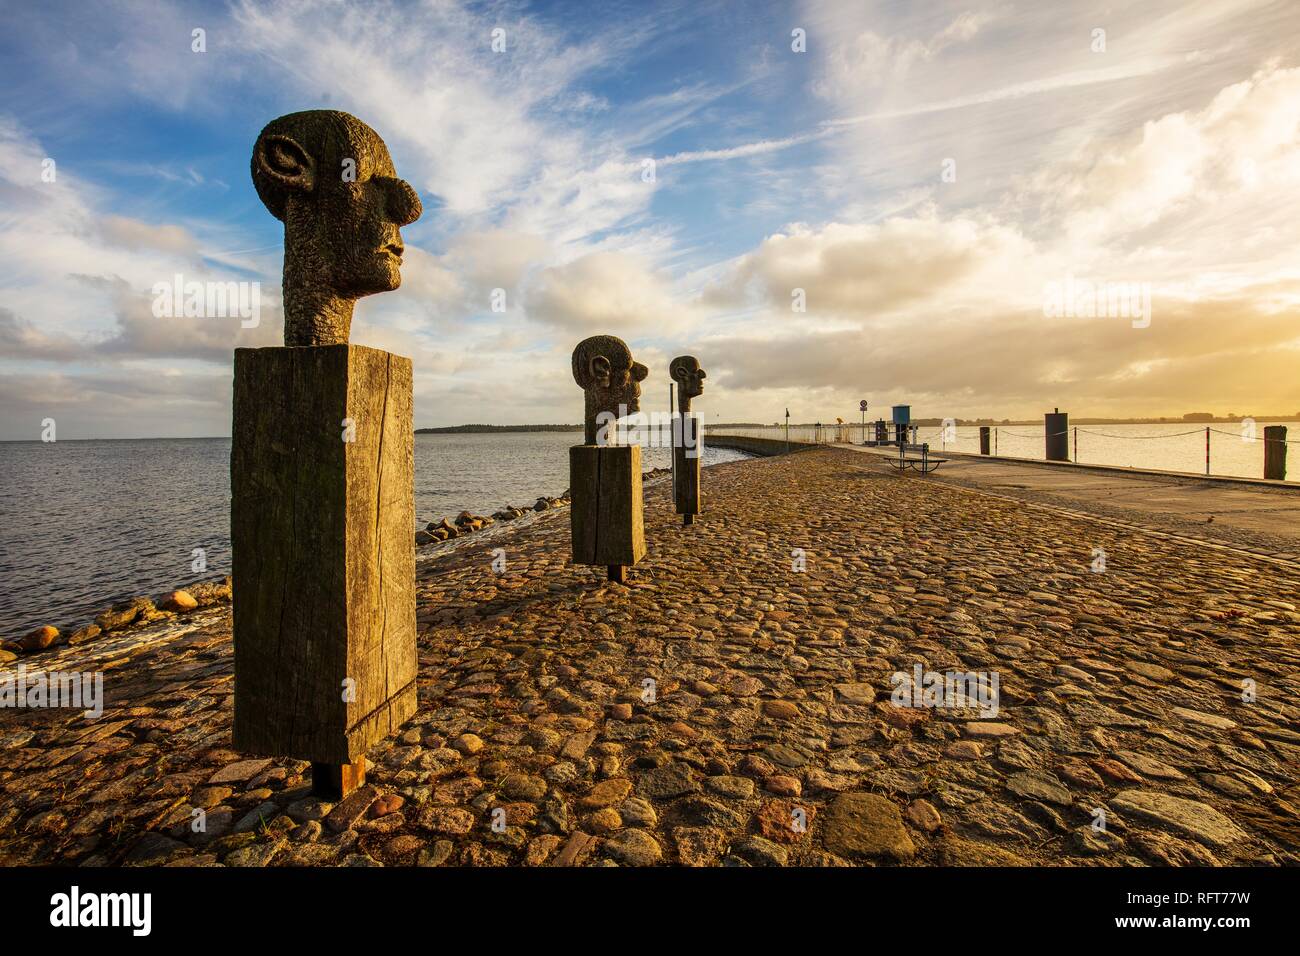 Le groupe de sculptures "Les Trois Sages" à l'entrée du port dans le village de pêcheurs de Wieck, Greifswald, Mecklenburg-Vorpommern, Allemagne Banque D'Images